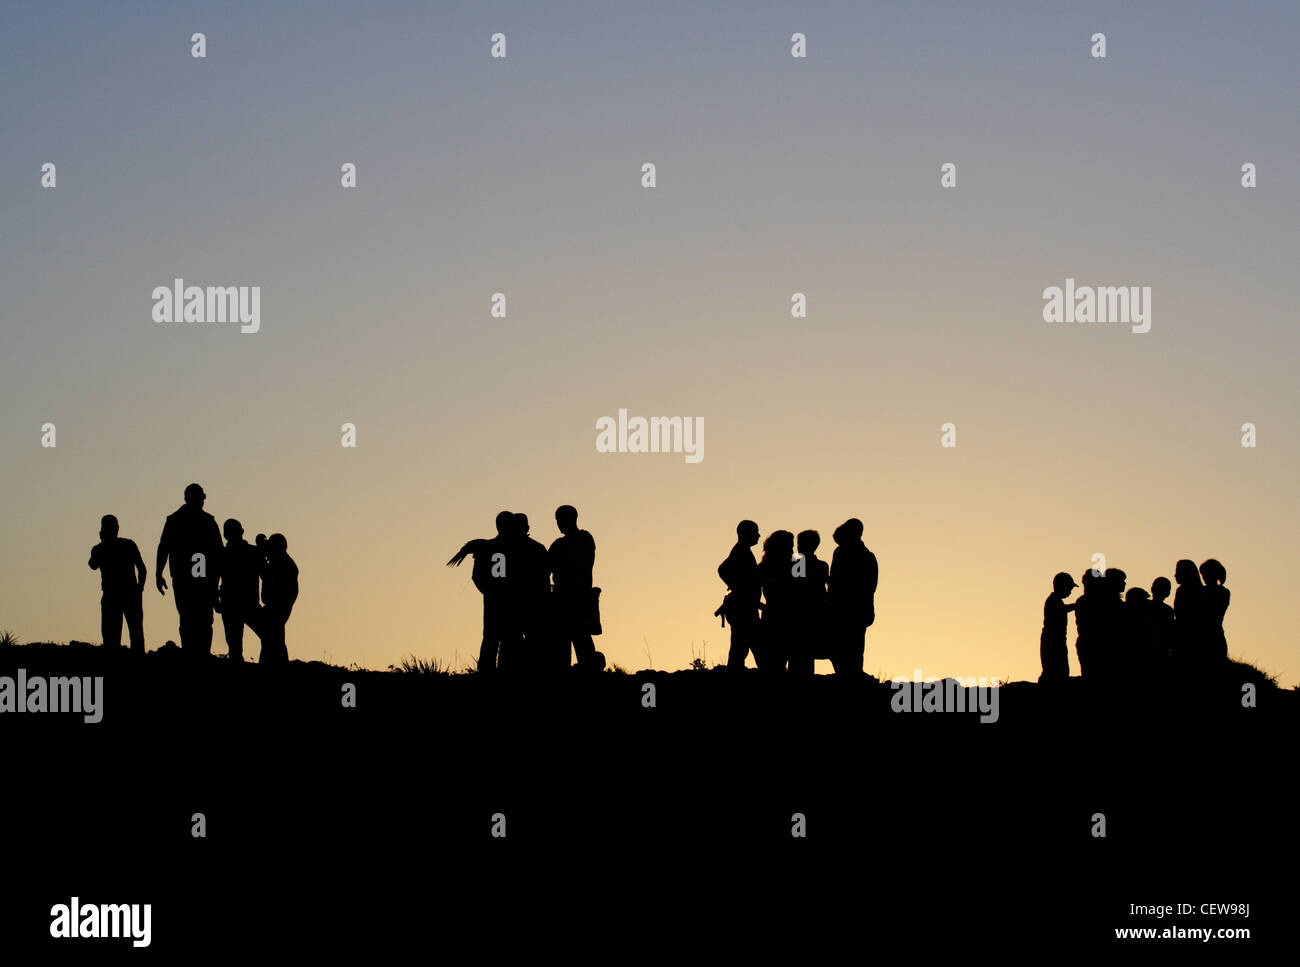 Des groupes de personnes en silhouette au crépuscule. Peut être utilisé en tant que concept de vie photo illustrant l'interaction sociale, la séparation entre les groupes etc. Banque D'Images